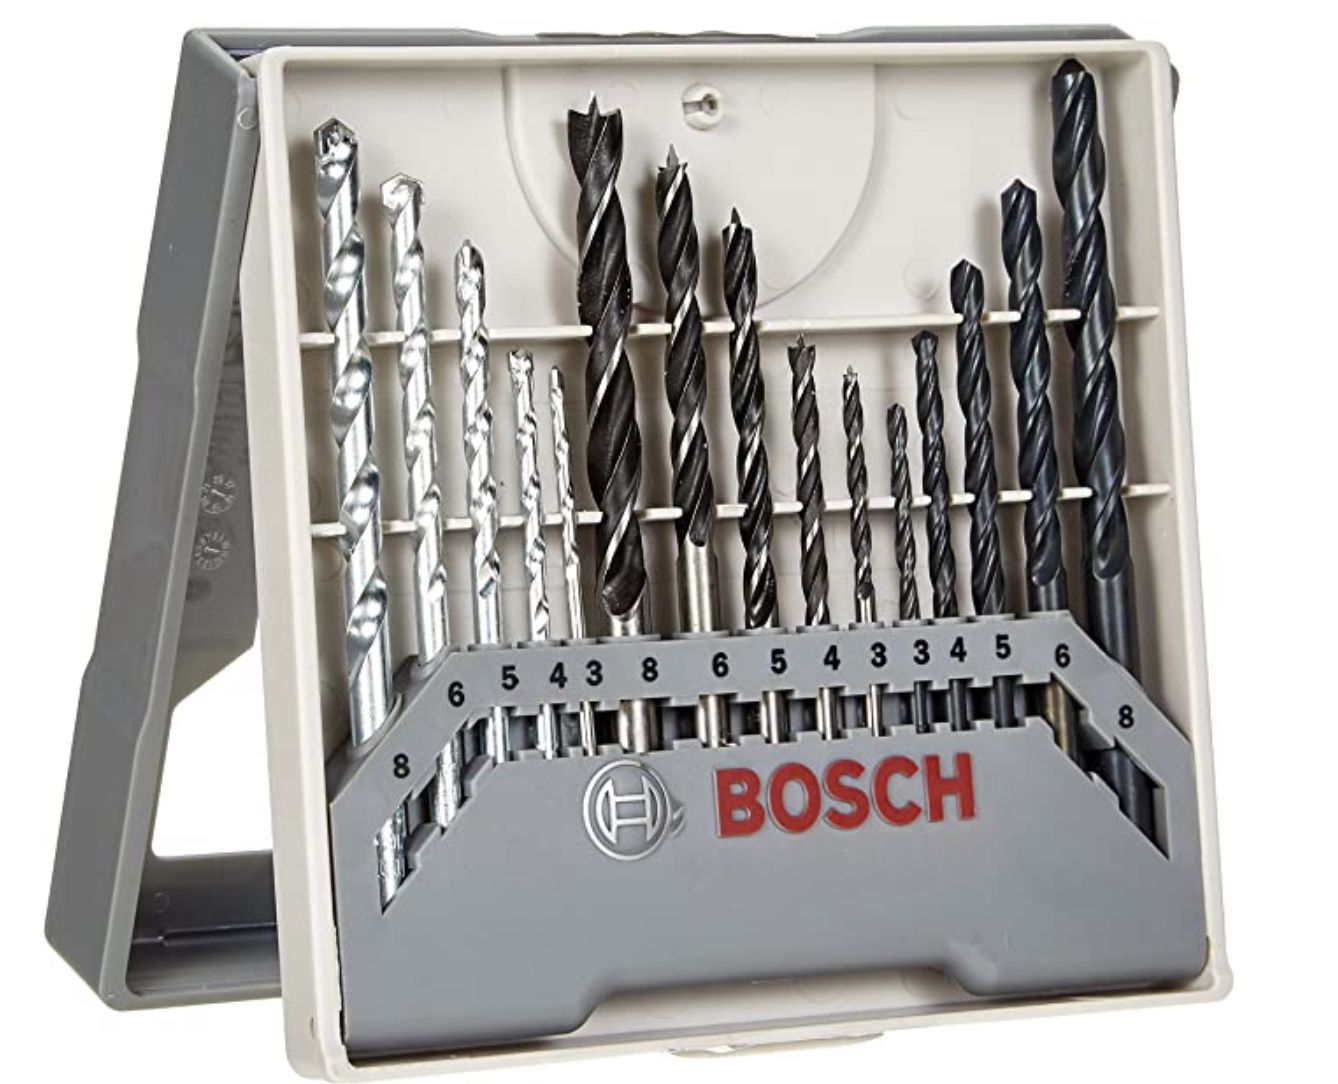 Bosch Bohrer Set gemischt 15 teilig (Metall, Holz, Stein) für 9,59€ (statt 15€)   Prime